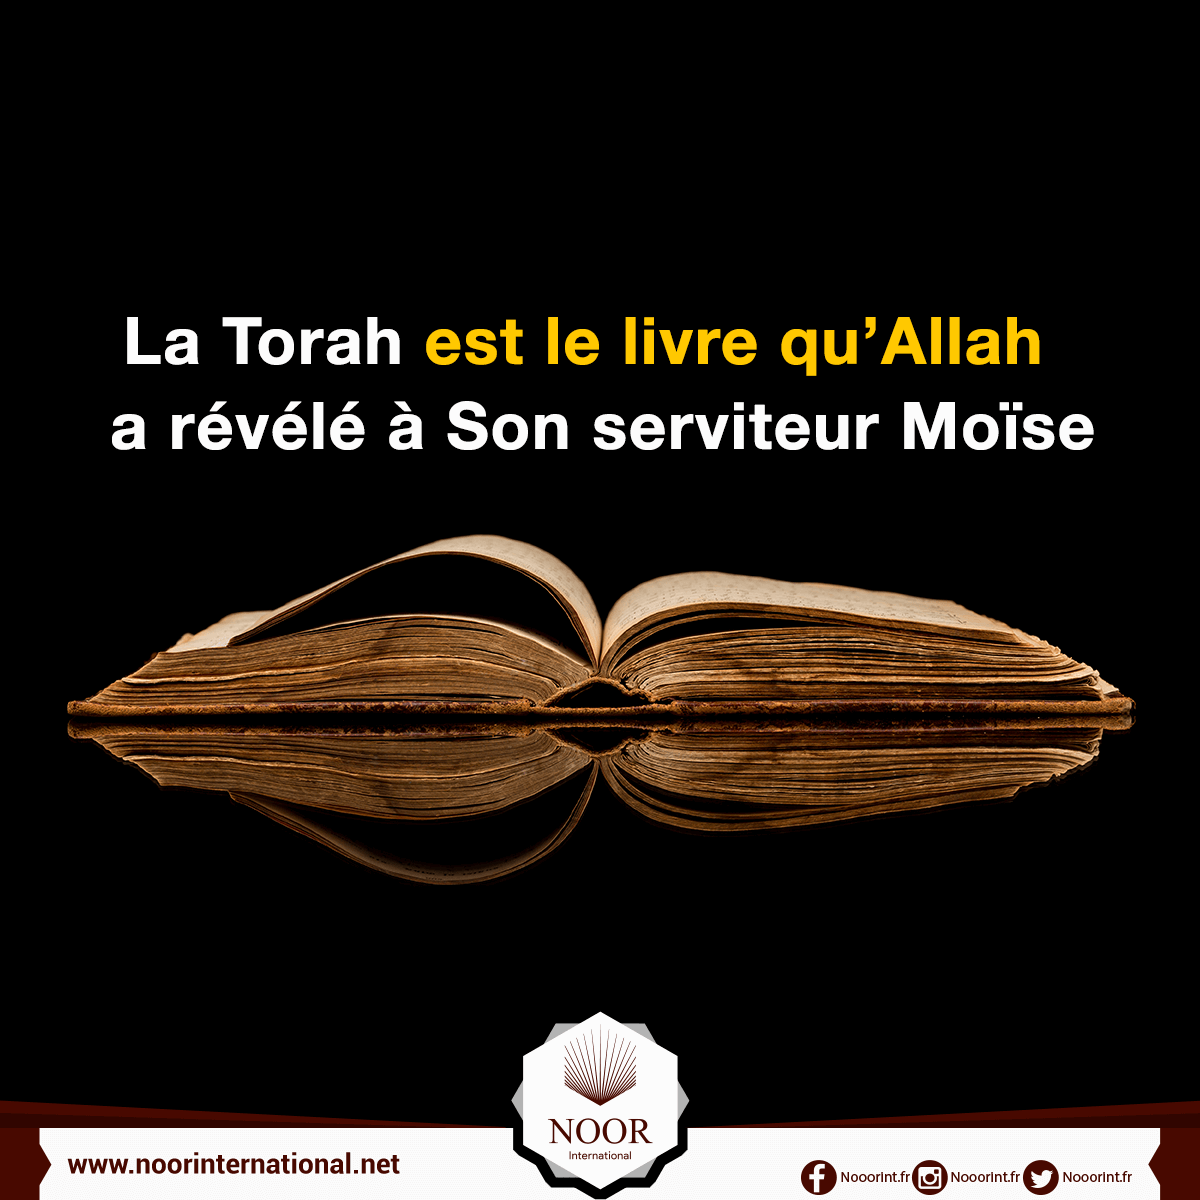 La Torah est le livre qu’Allah a révélé à Son serviteur Moïse